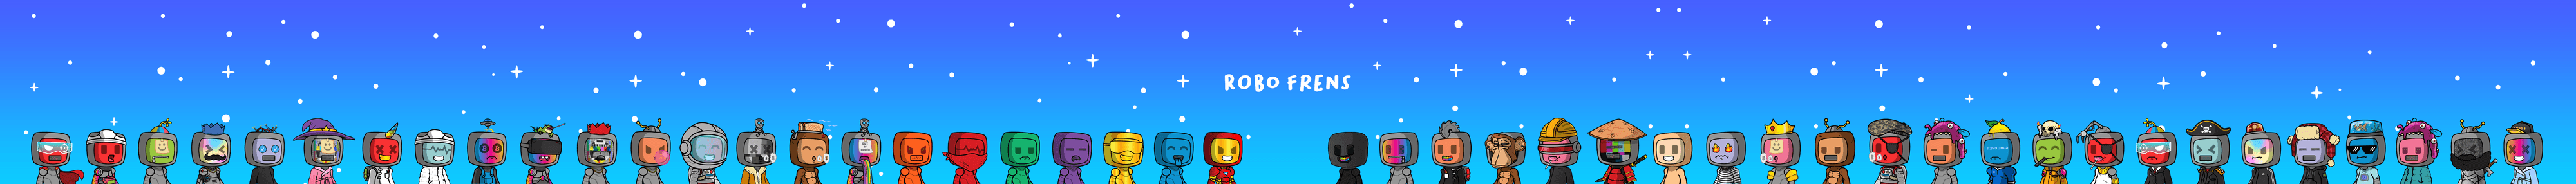 robofrensLLC banner